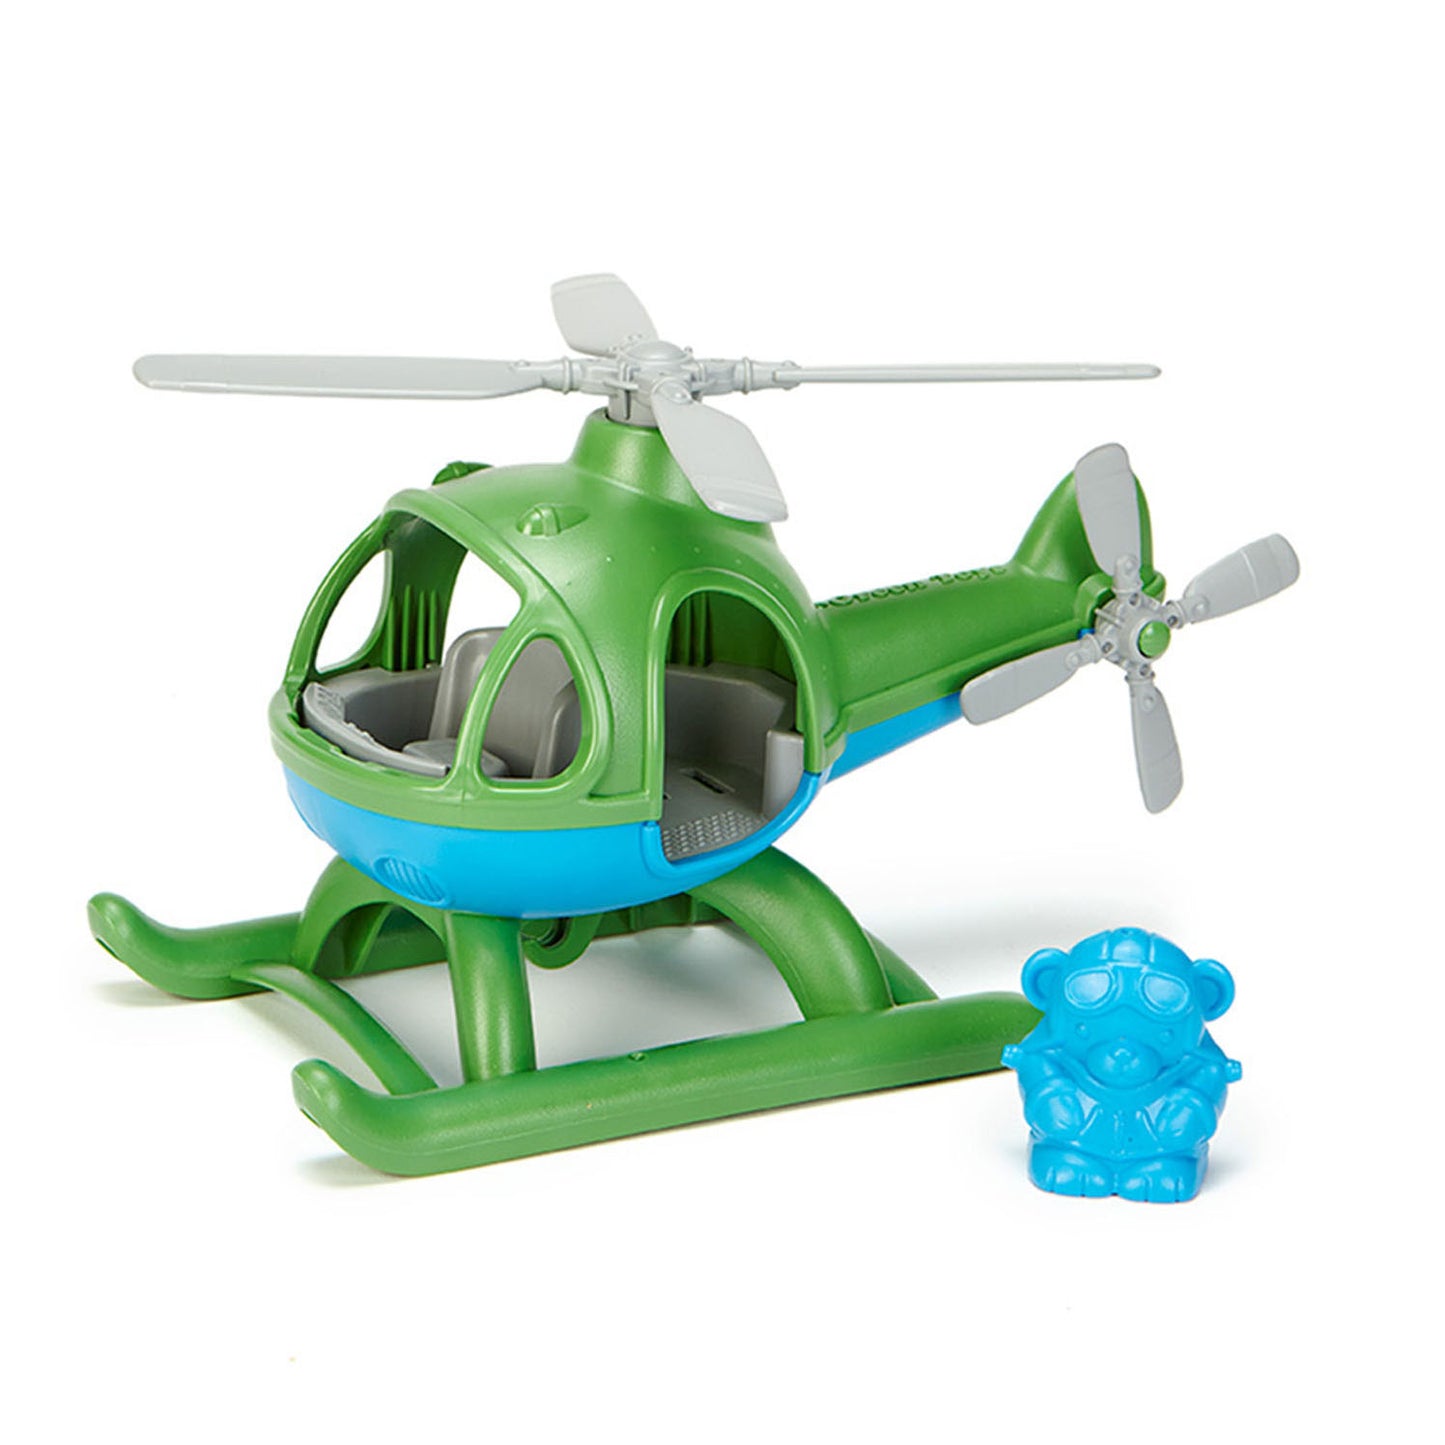 Juguetes verdes helicópter reciclado verde